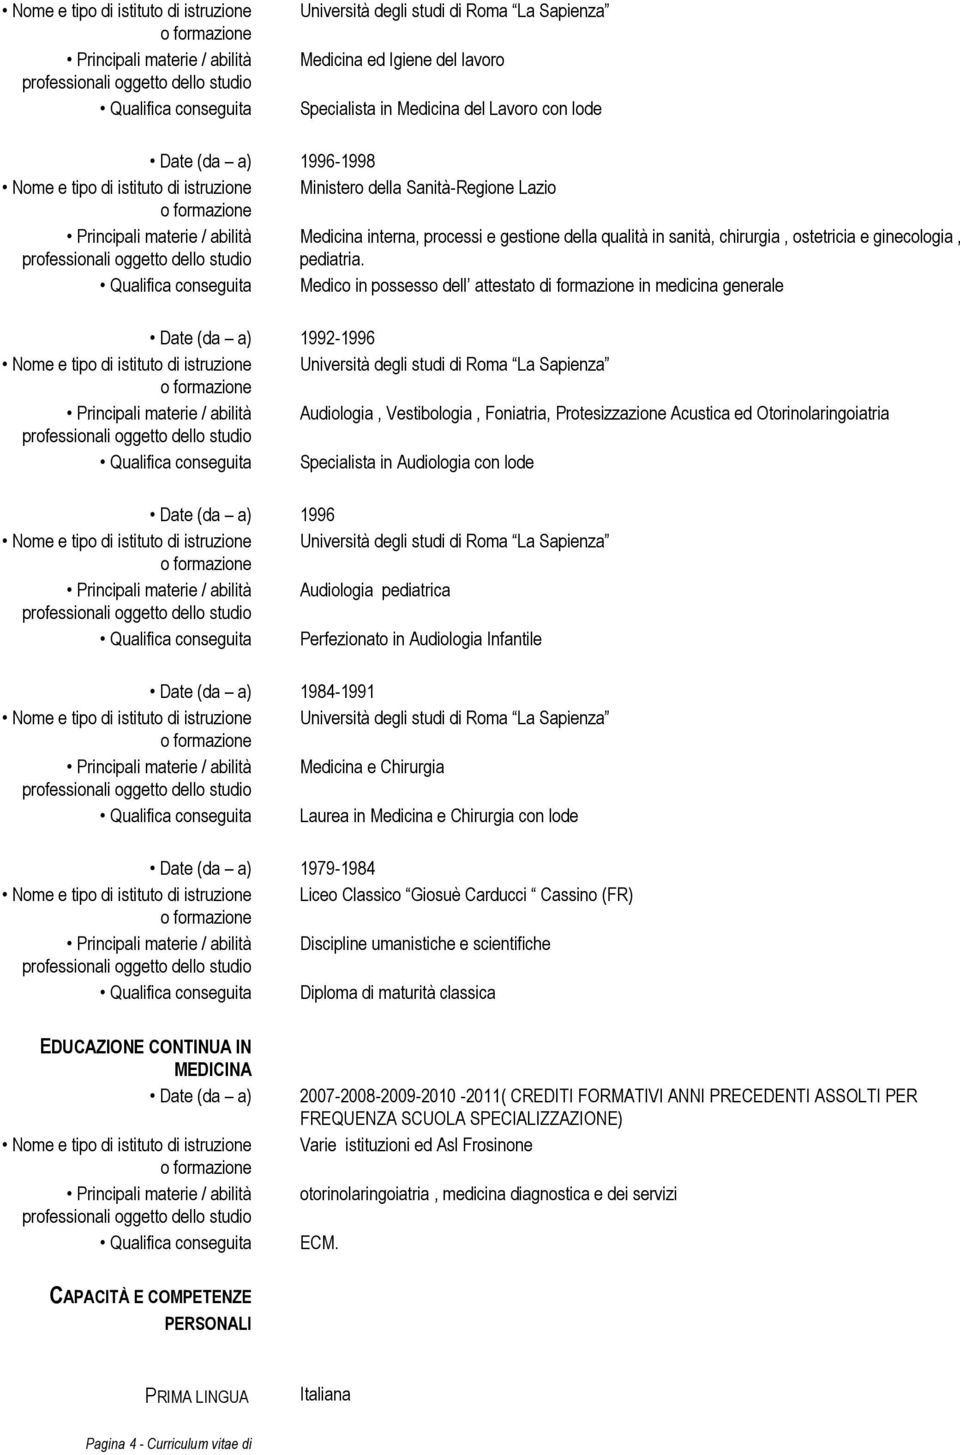 Qualifica conseguita Medico in possesso dell attestato di formazione in medicina generale Date (da a) 1992-1996 Audiologia, Vestibologia, Foniatria, Protesizzazione Acustica ed Otorinolaringoiatria